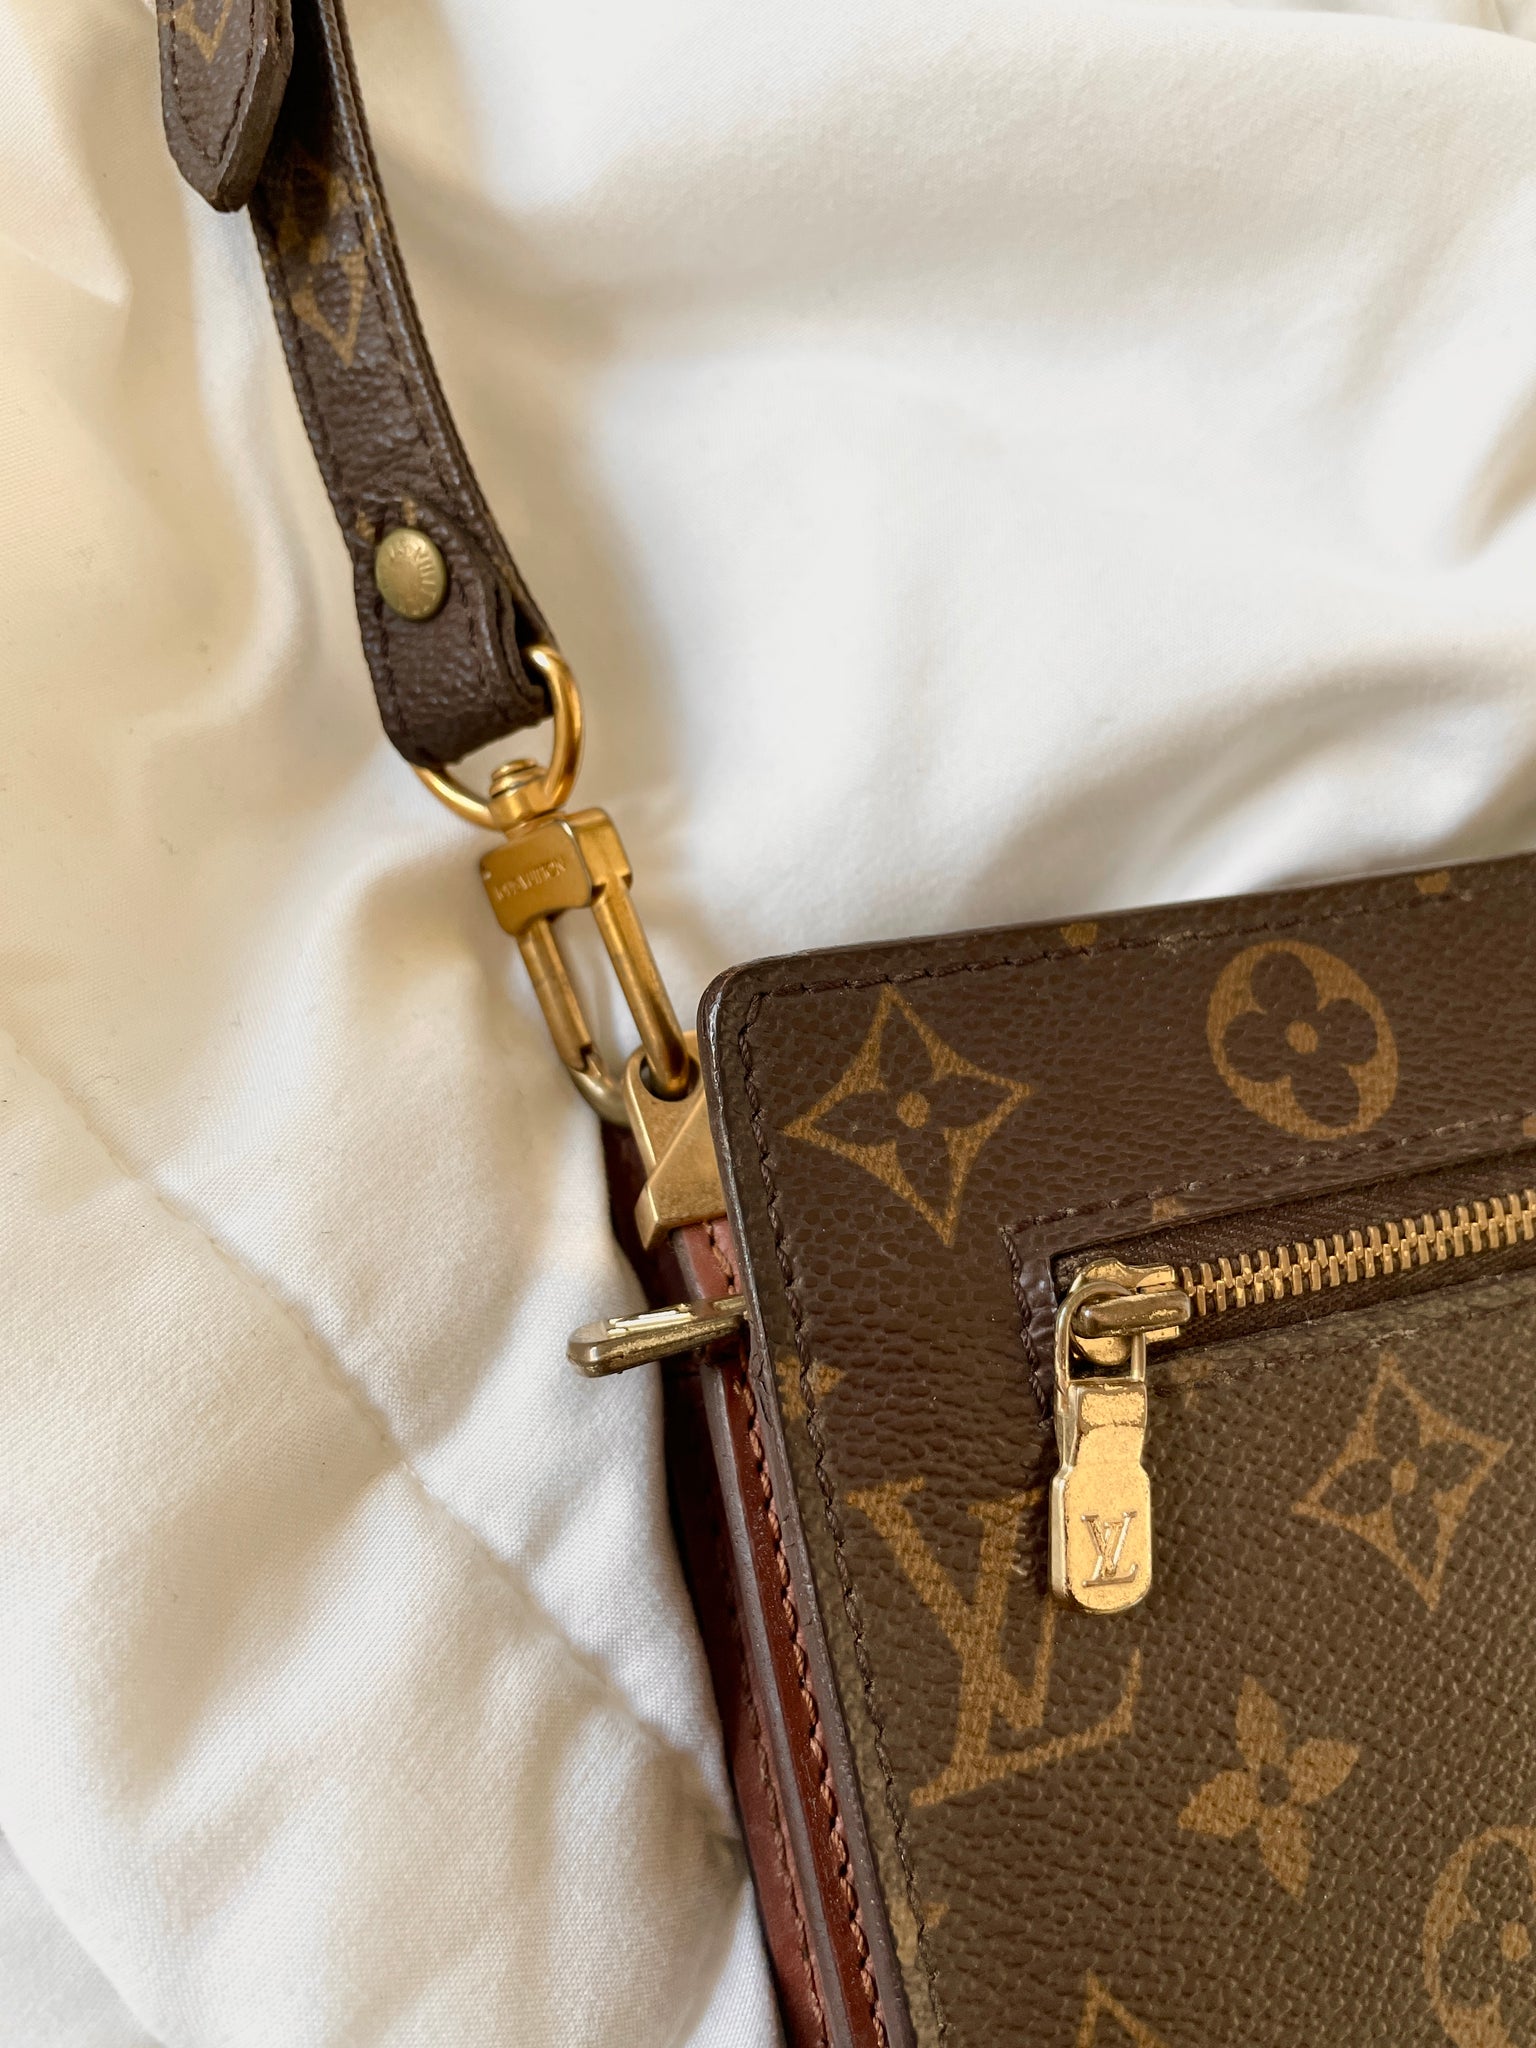 Shop Louis Vuitton Shoulder Bags (M21353, M21209) by lifeisfun